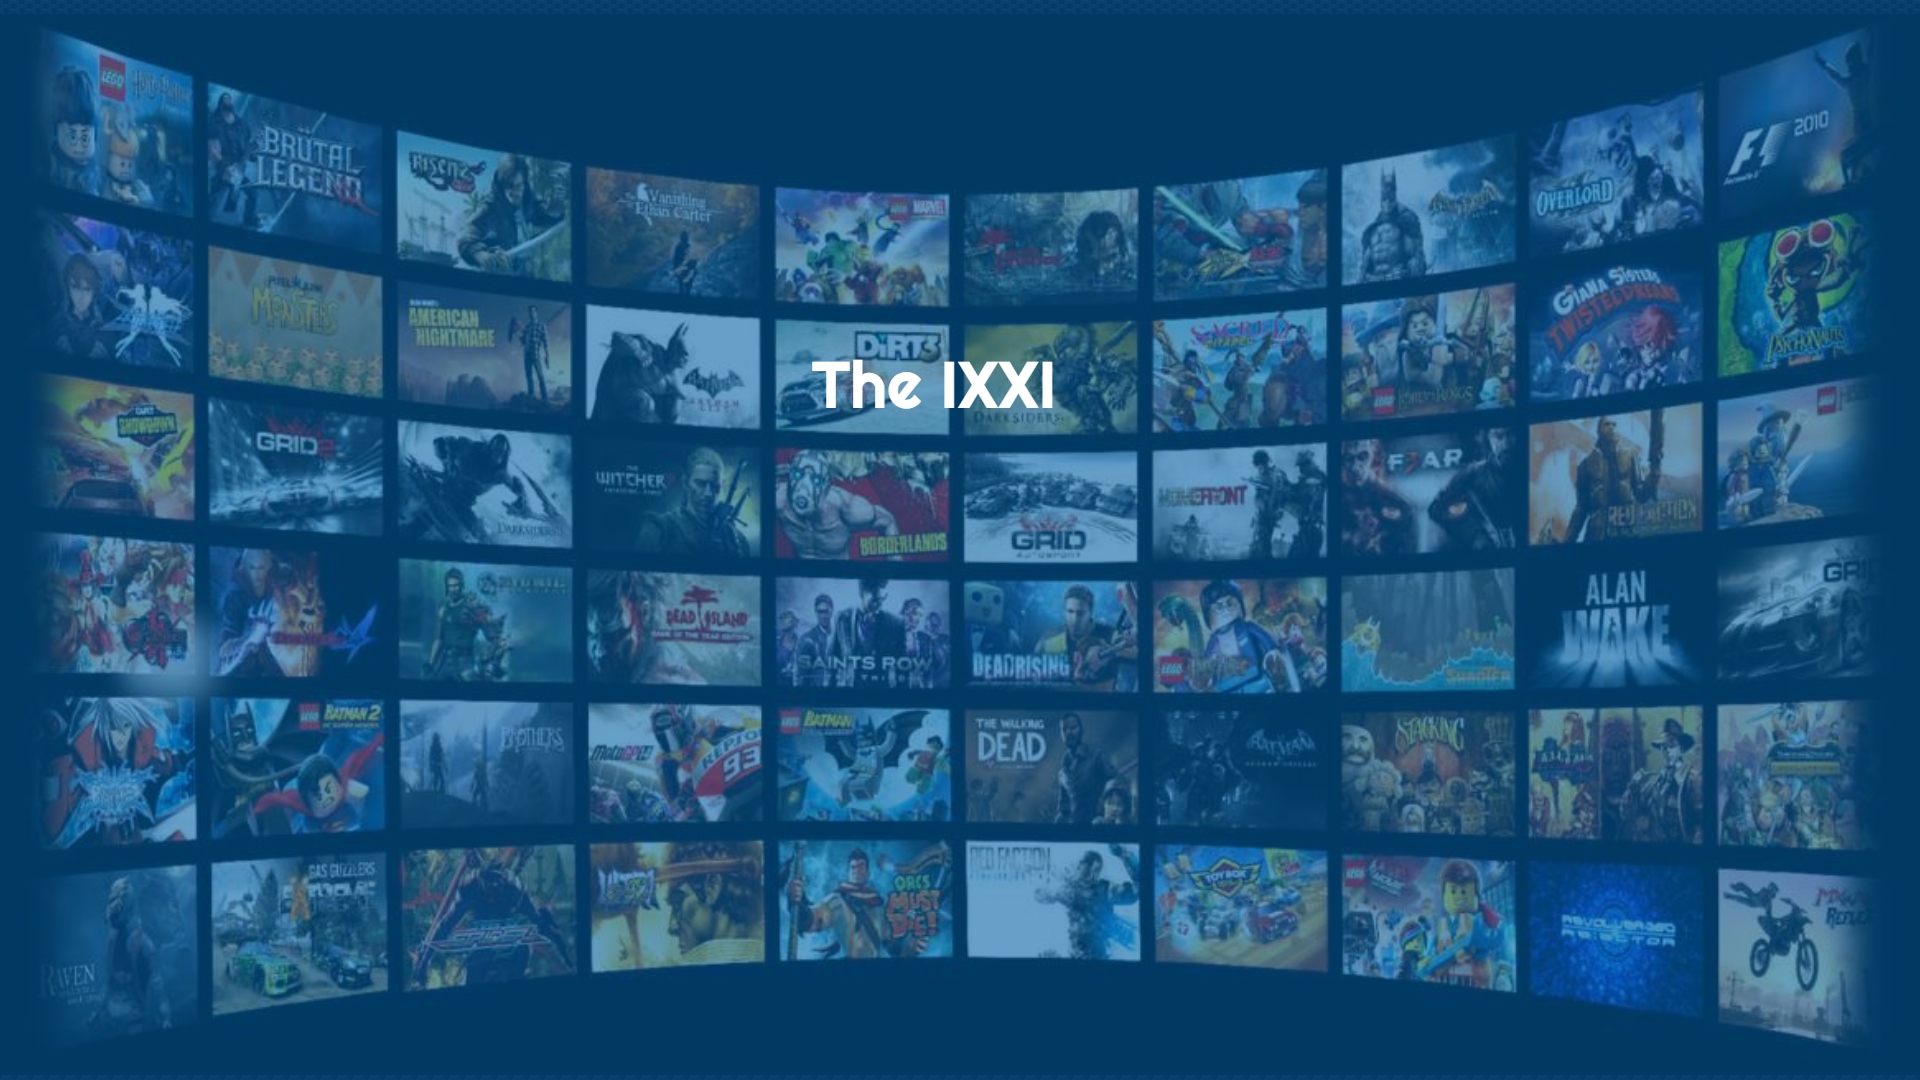 The IXXI